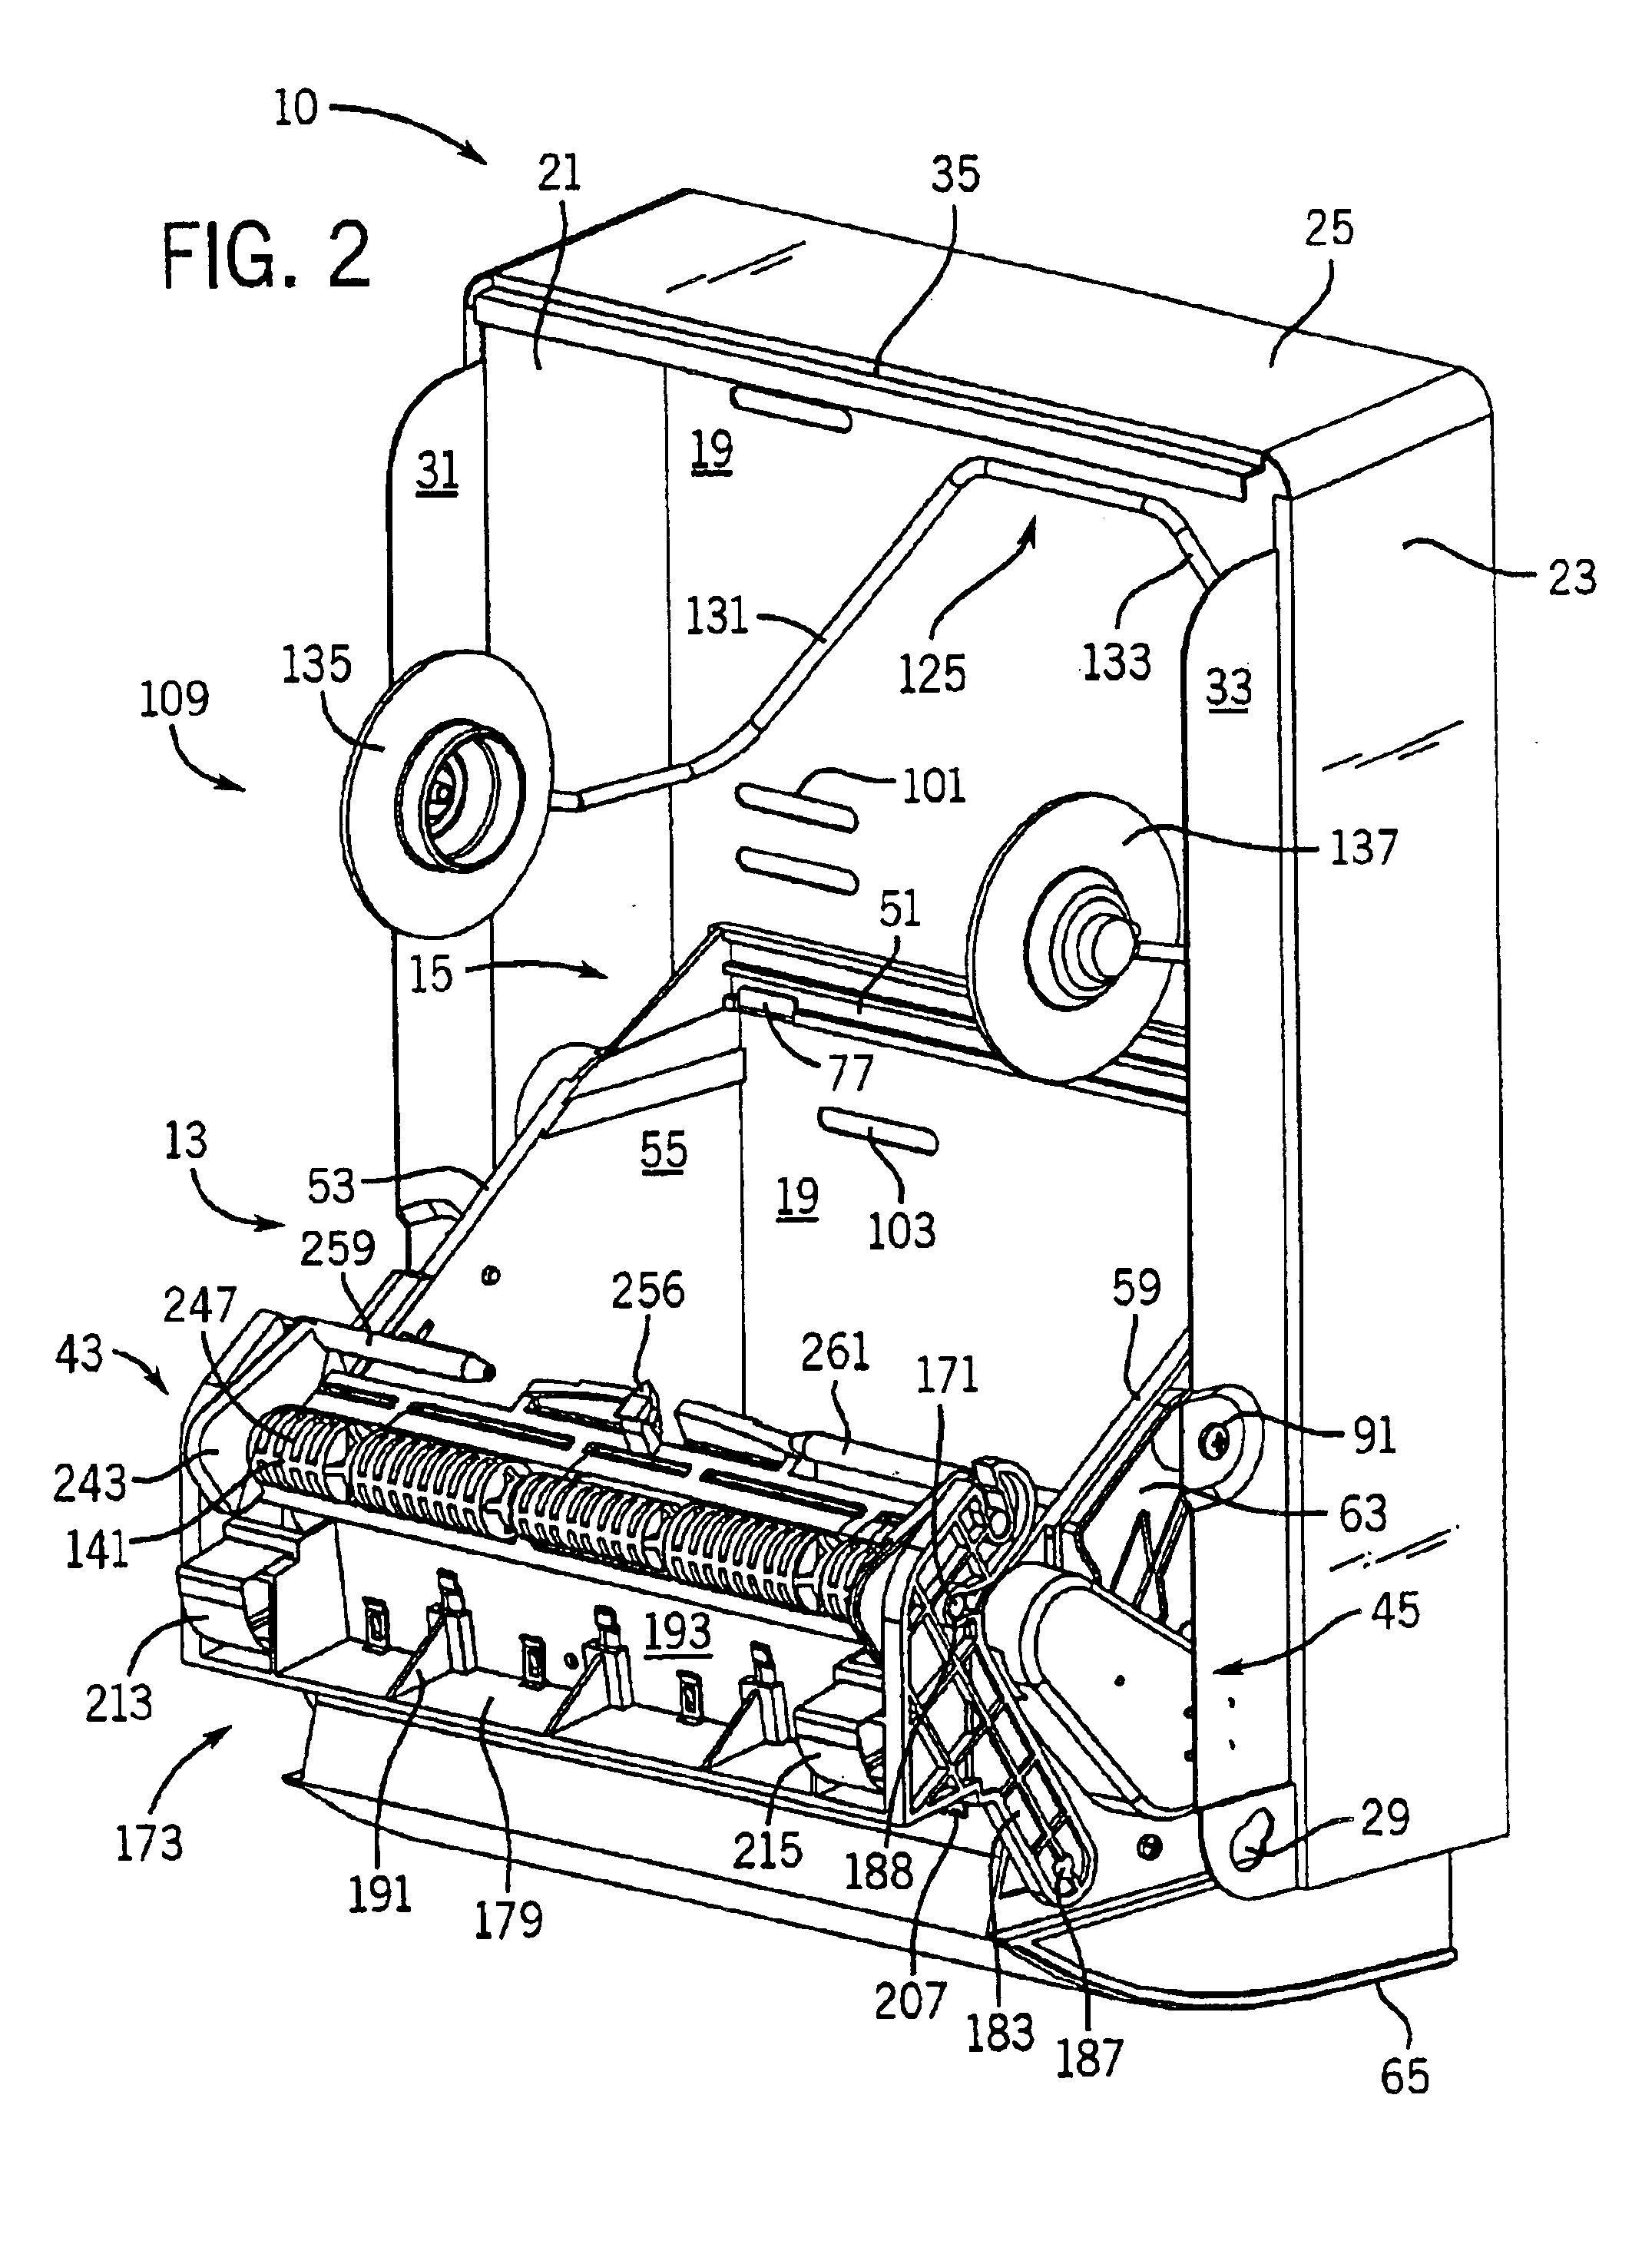 Automatic dispenser apparatus